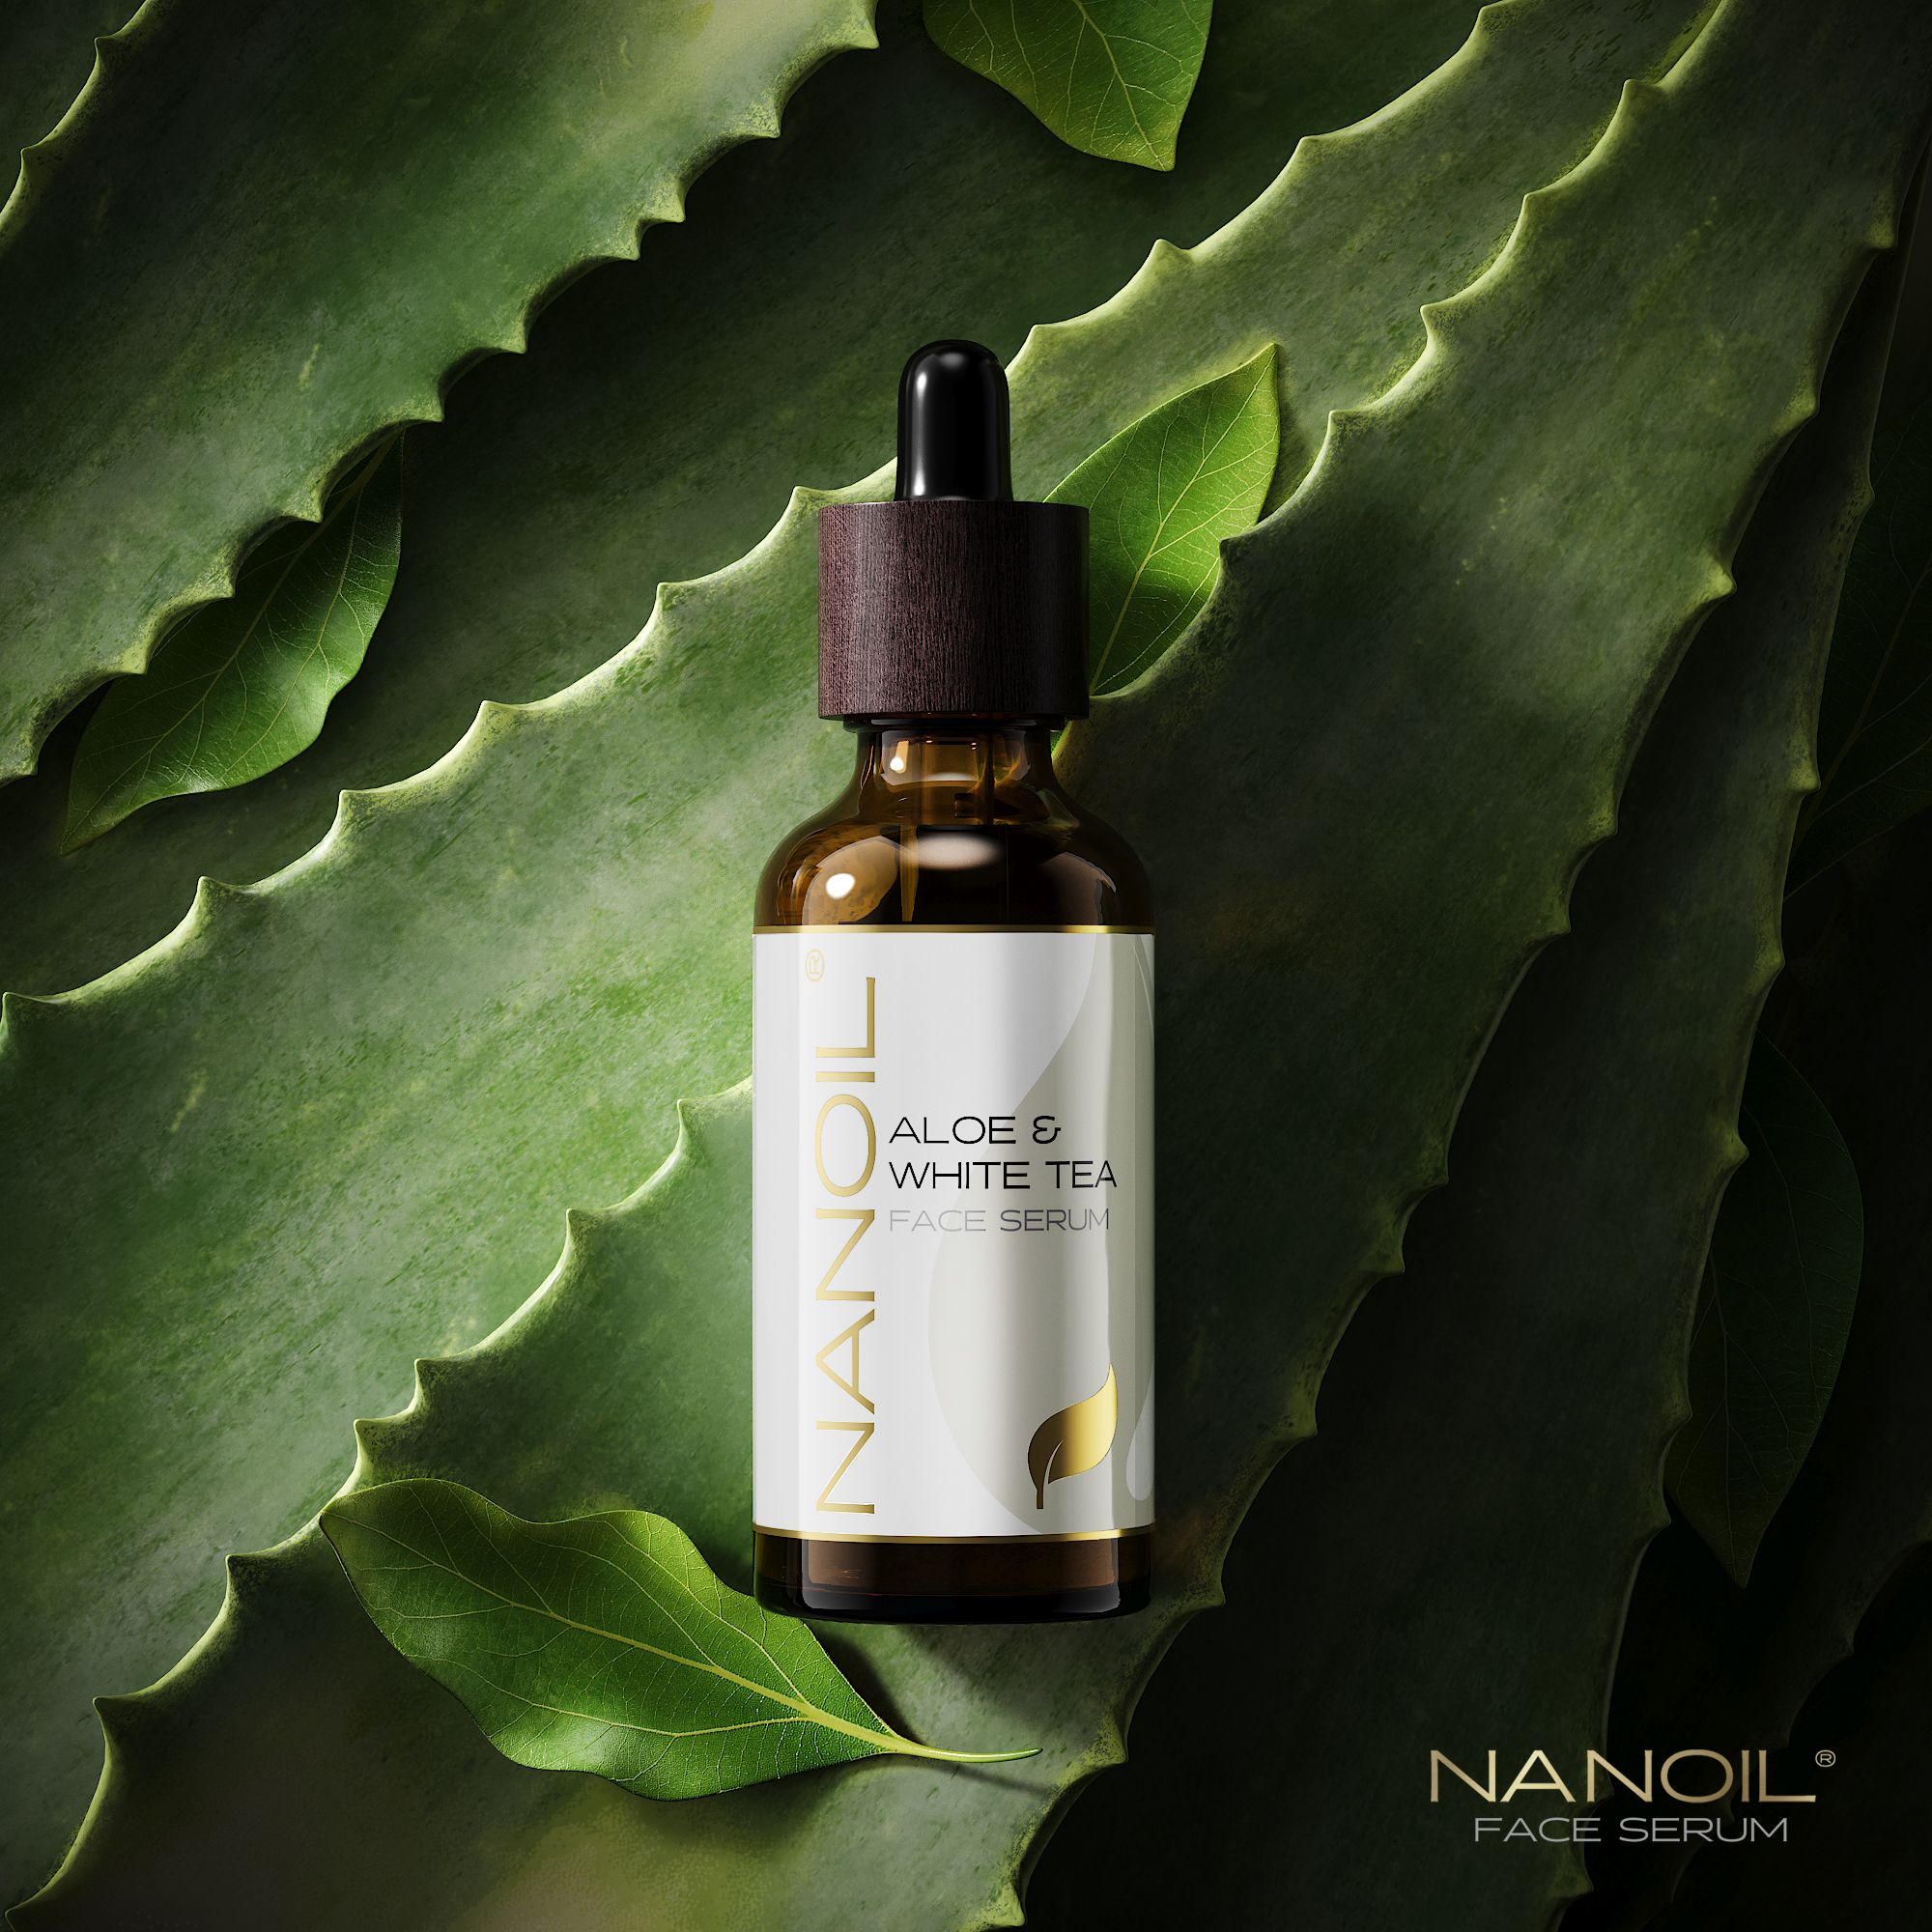 Serum do twarzy Nanoil Aloe & White Tea – recenzja miesiąca